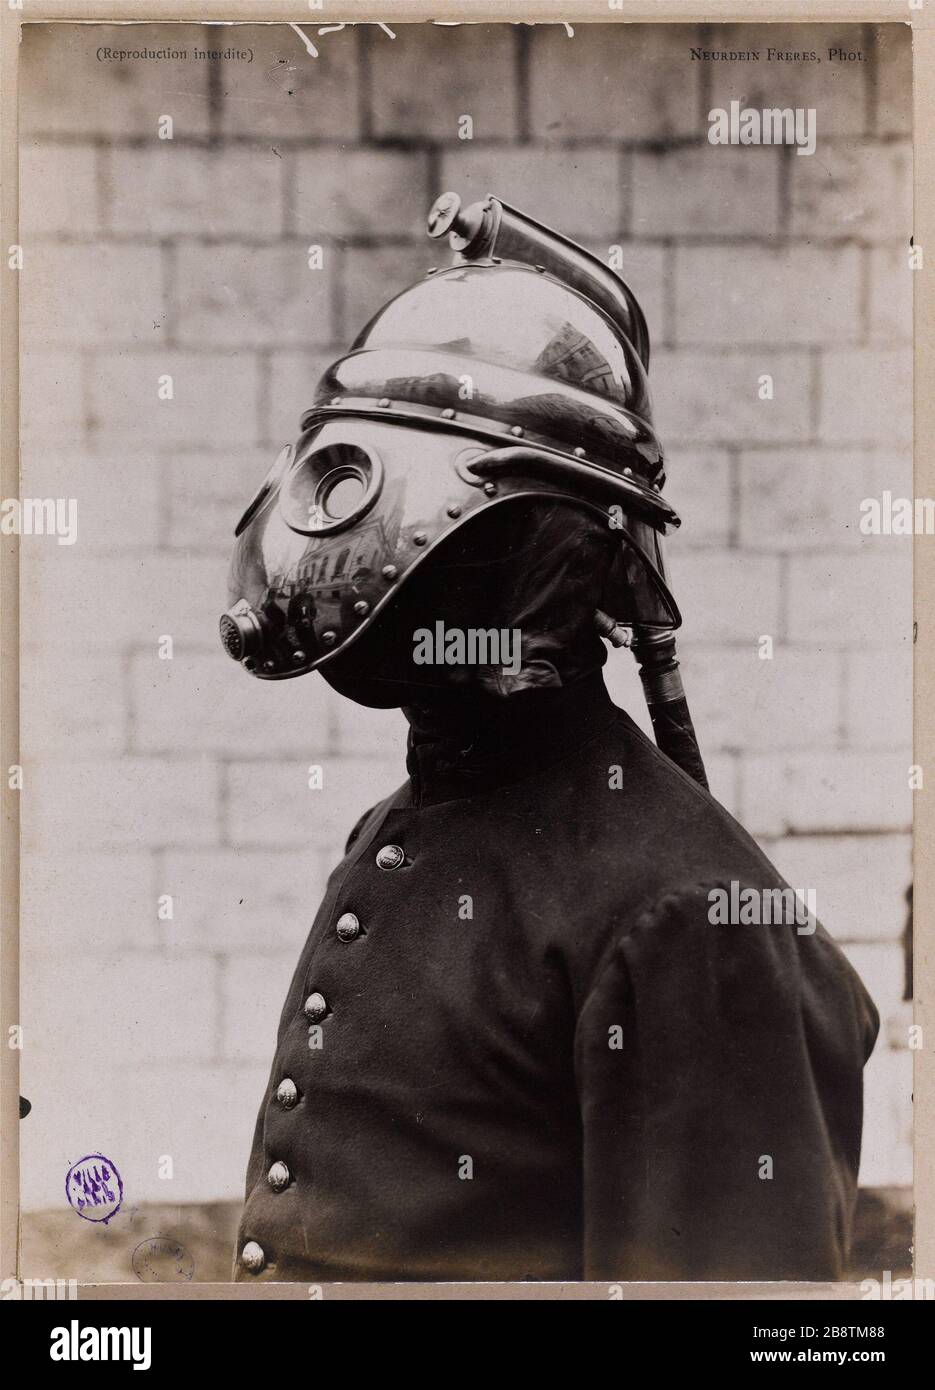 Toute sécurité Masque Masque Masque à gaz respirateur masque Masque à gaz  chimique - Chine Masque à gaz, masque complet